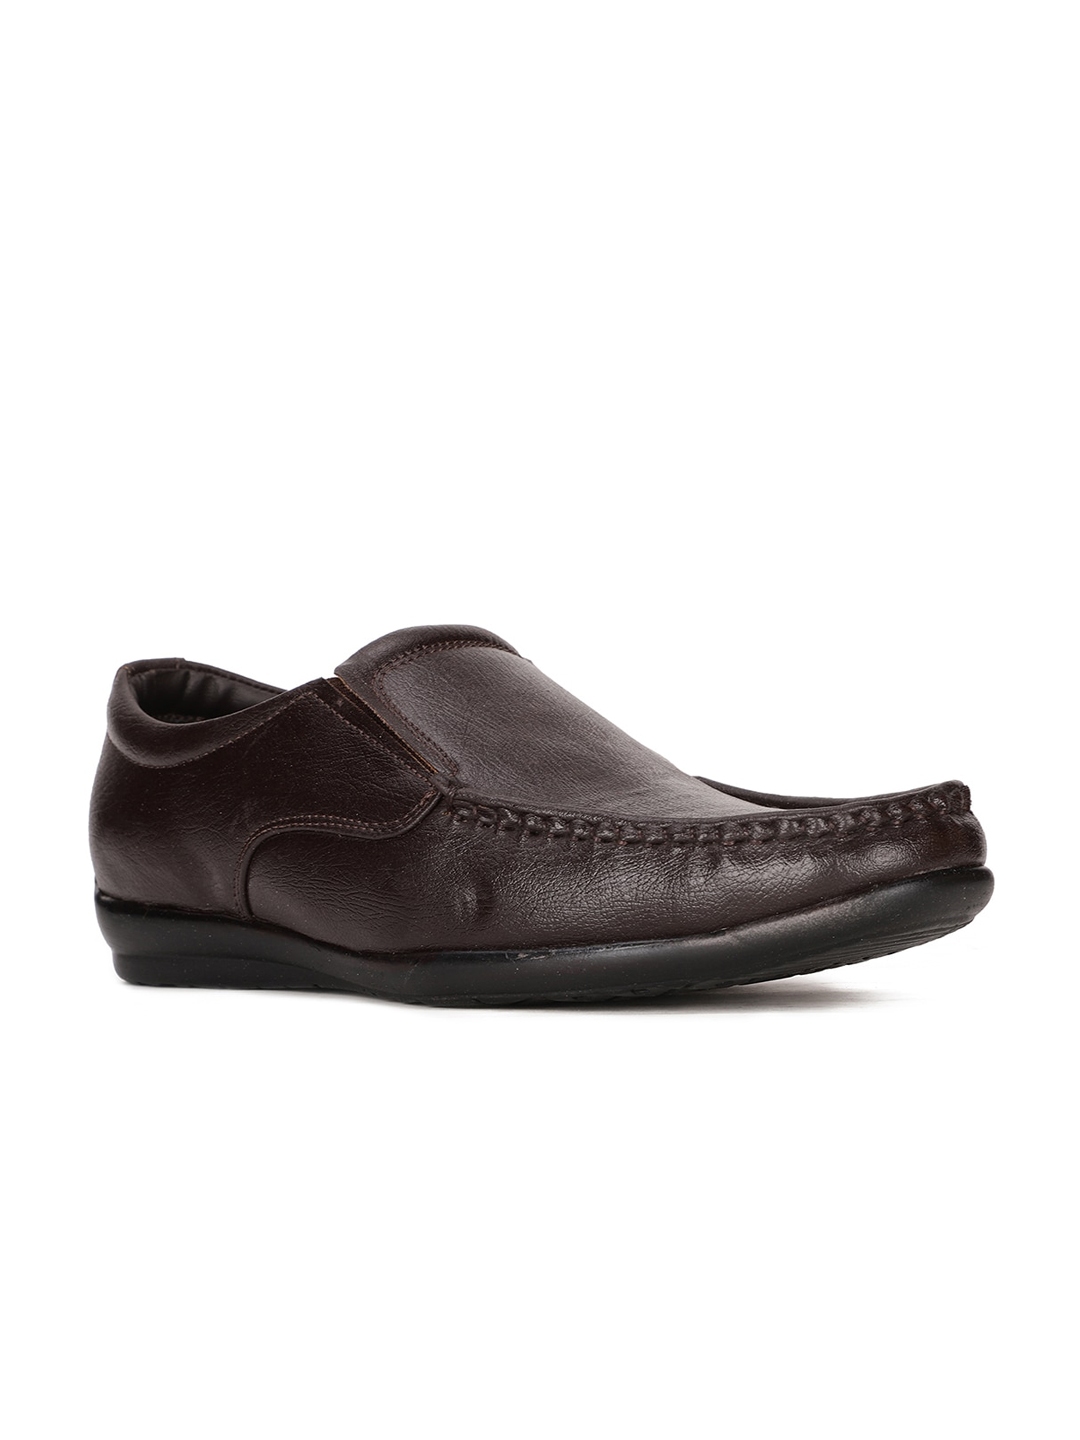 Buy Bata Men Brown Solid Formal Loafers - Formal Shoes for Men 17934244 ...